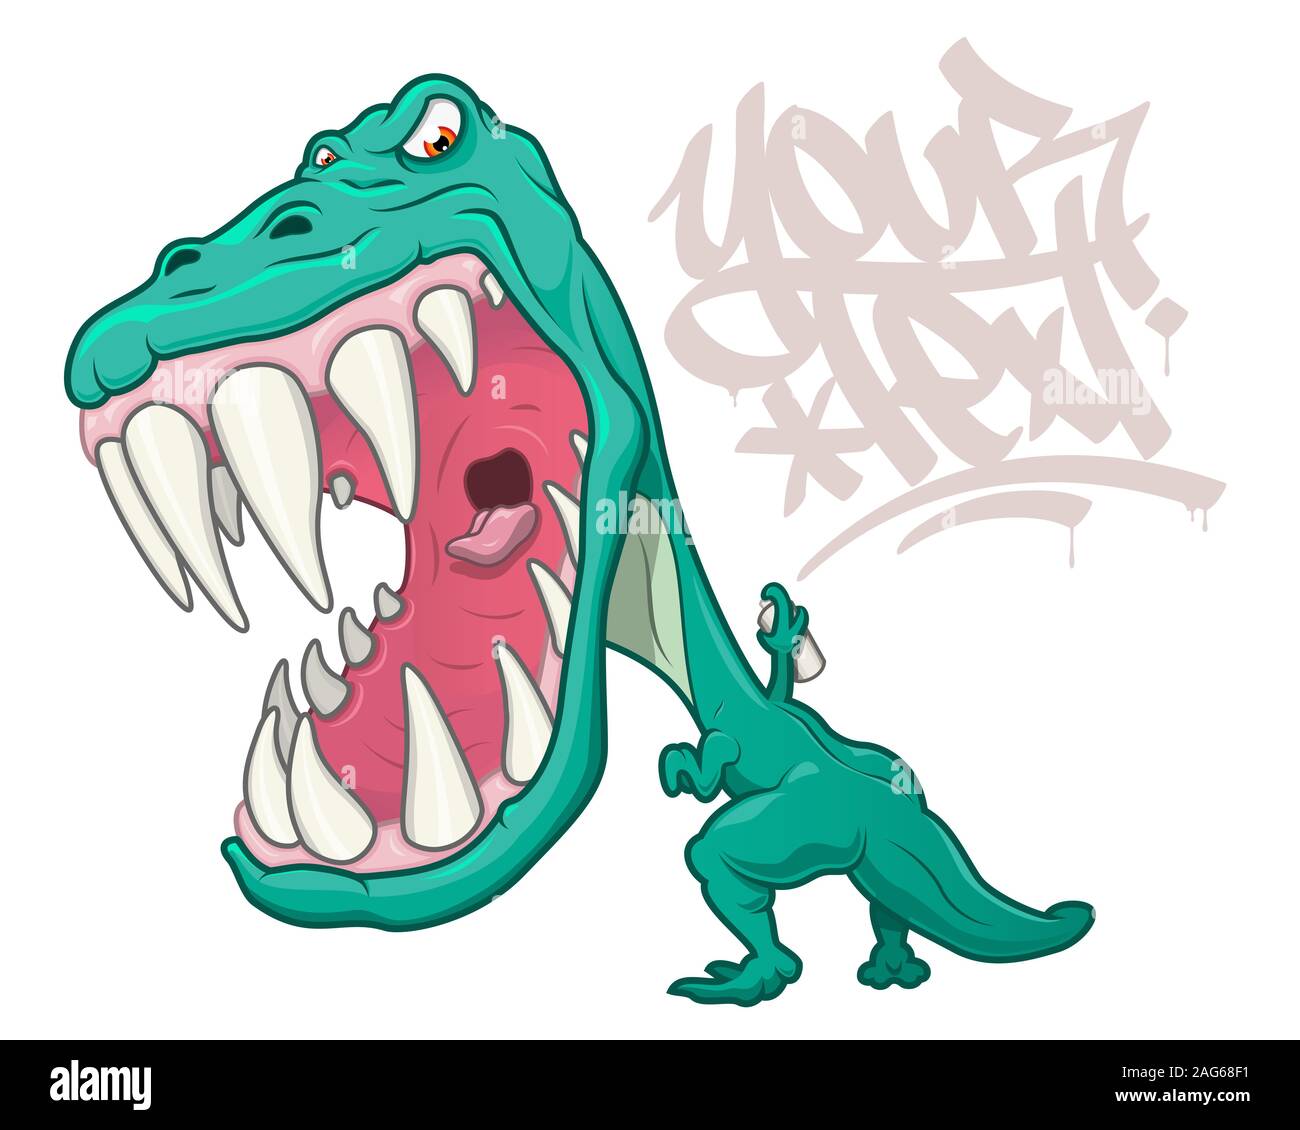 Eine verärgerte Tyrannosaurus rex brüllend und Schreiben von Graffiti im Comic-stil. Auf weiß mit Platz für die Platzierung von Text isoliert. Stock Vektor